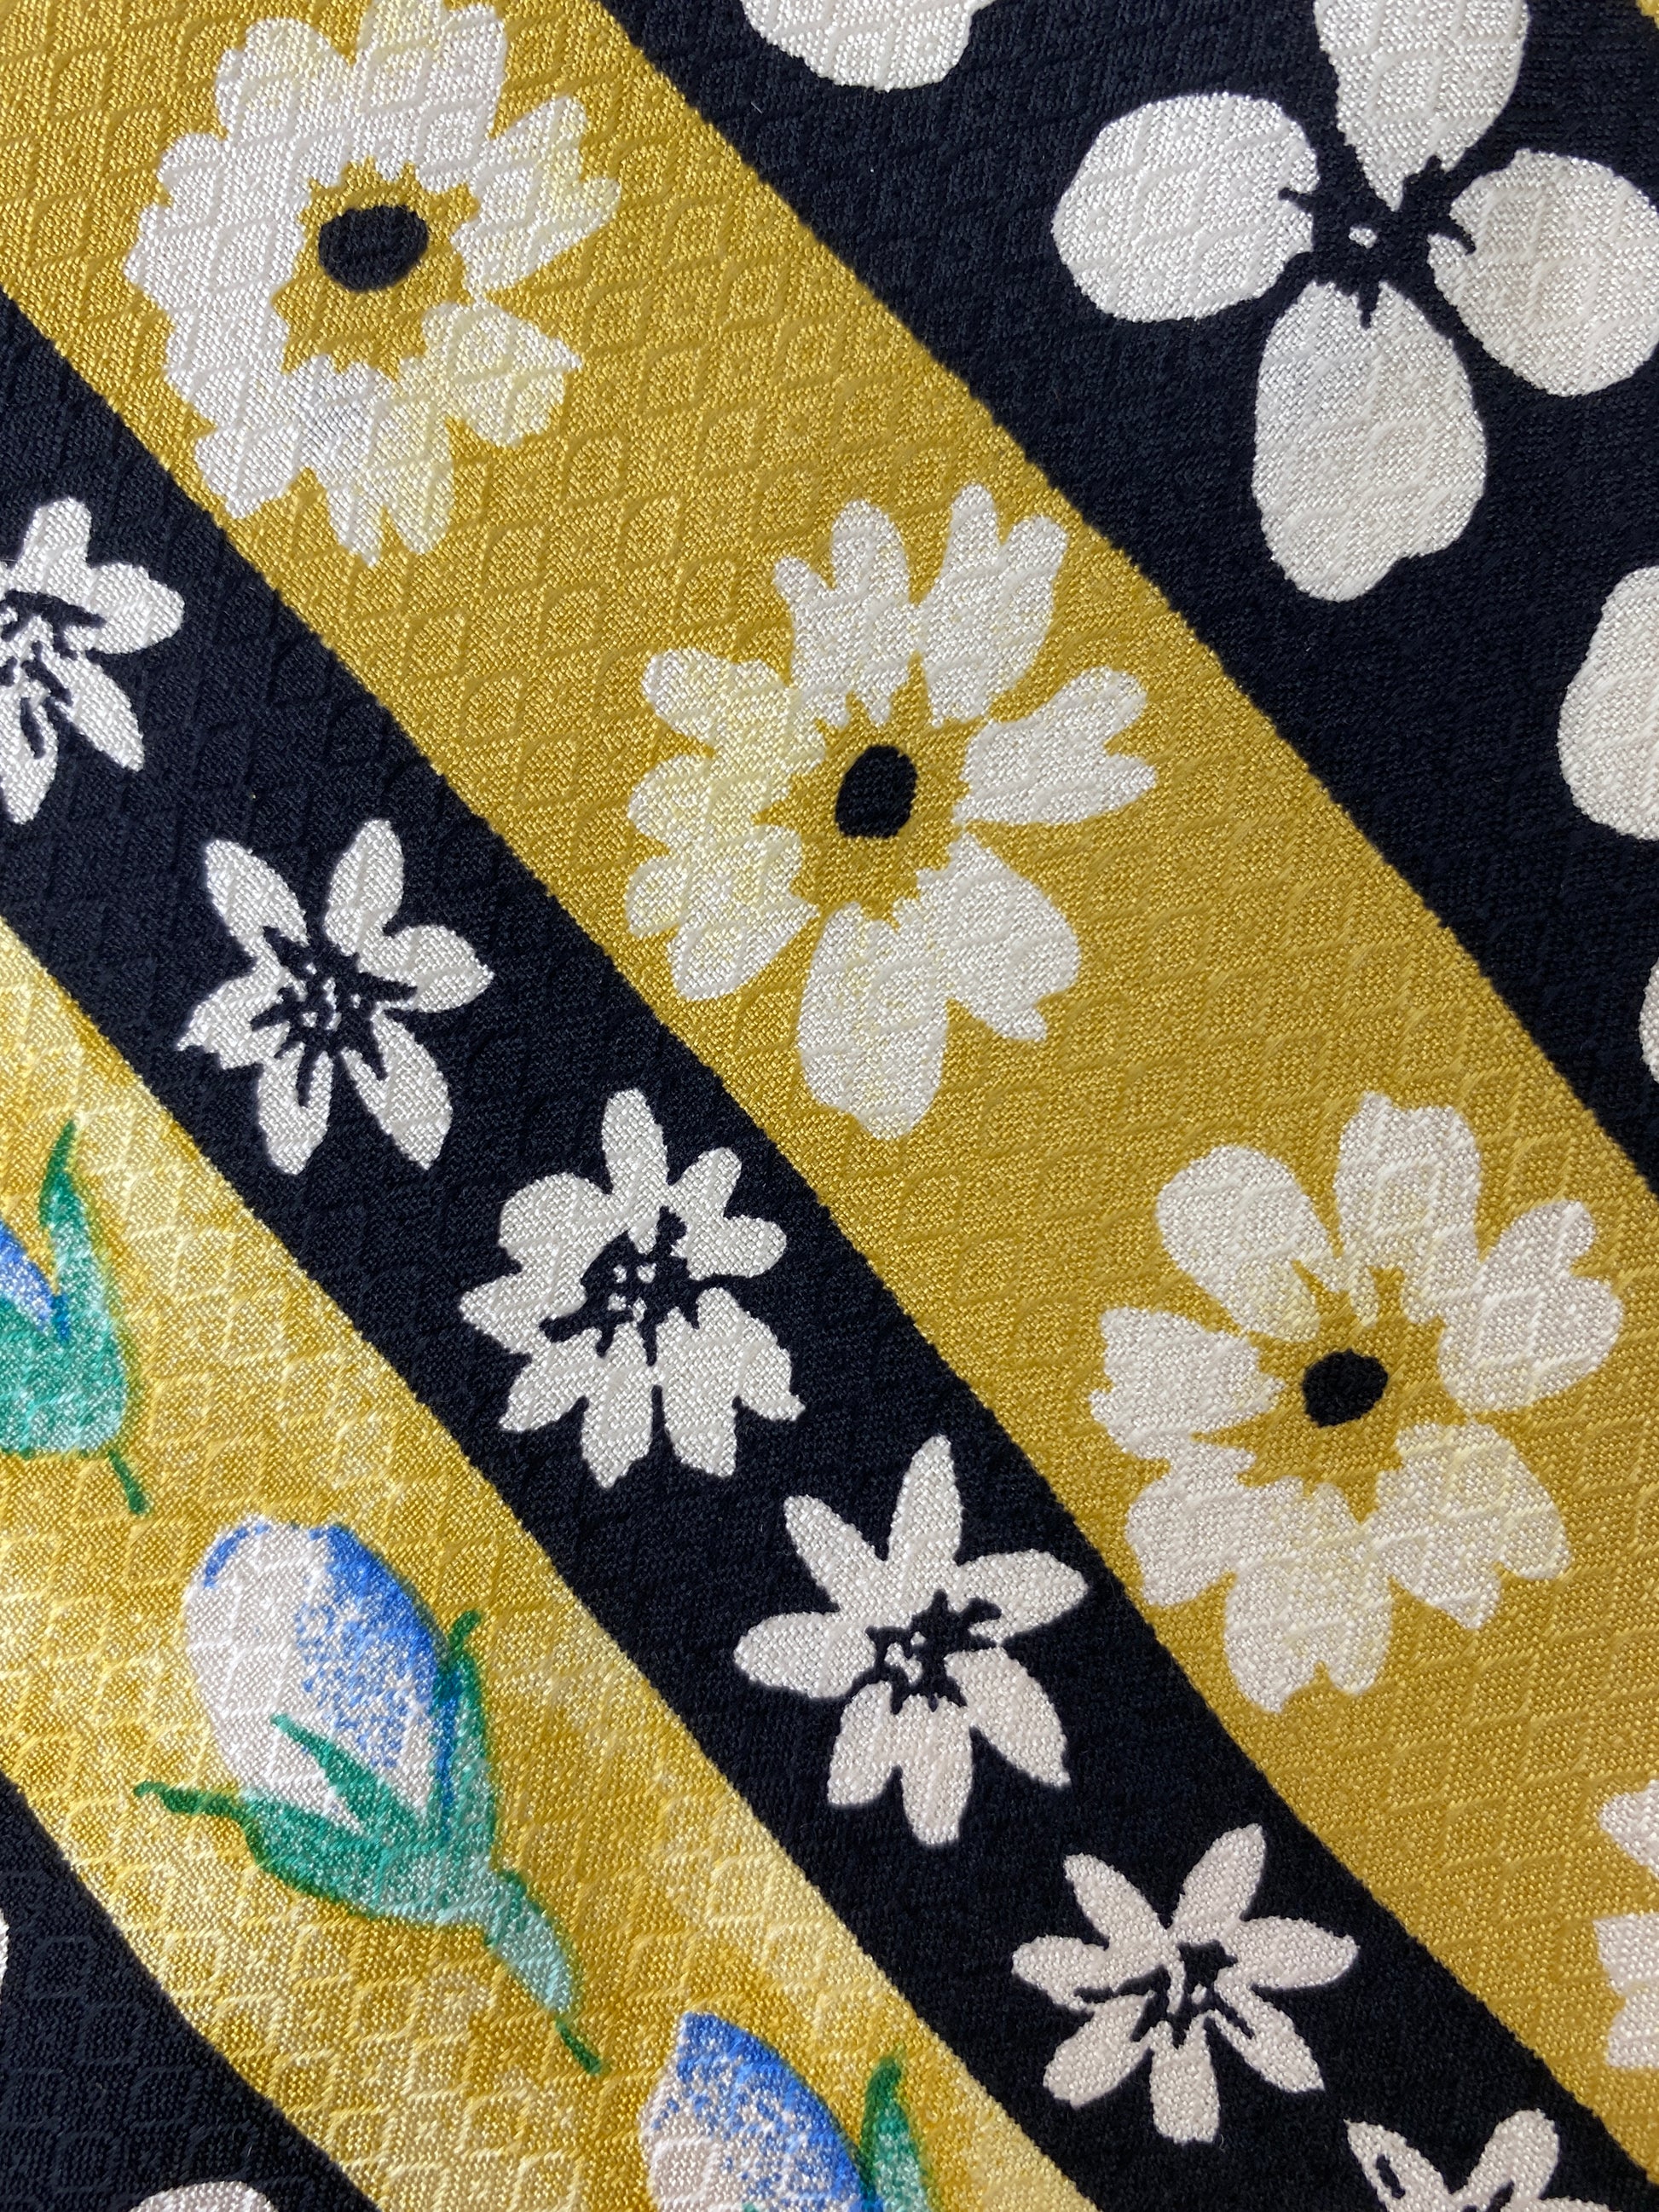 Close-up of patterned variant of: 90s Deadstock Silk Necktie, Men's Vintage Gold/Black Diagonal Stripe Floral Pattern Tie, NOS